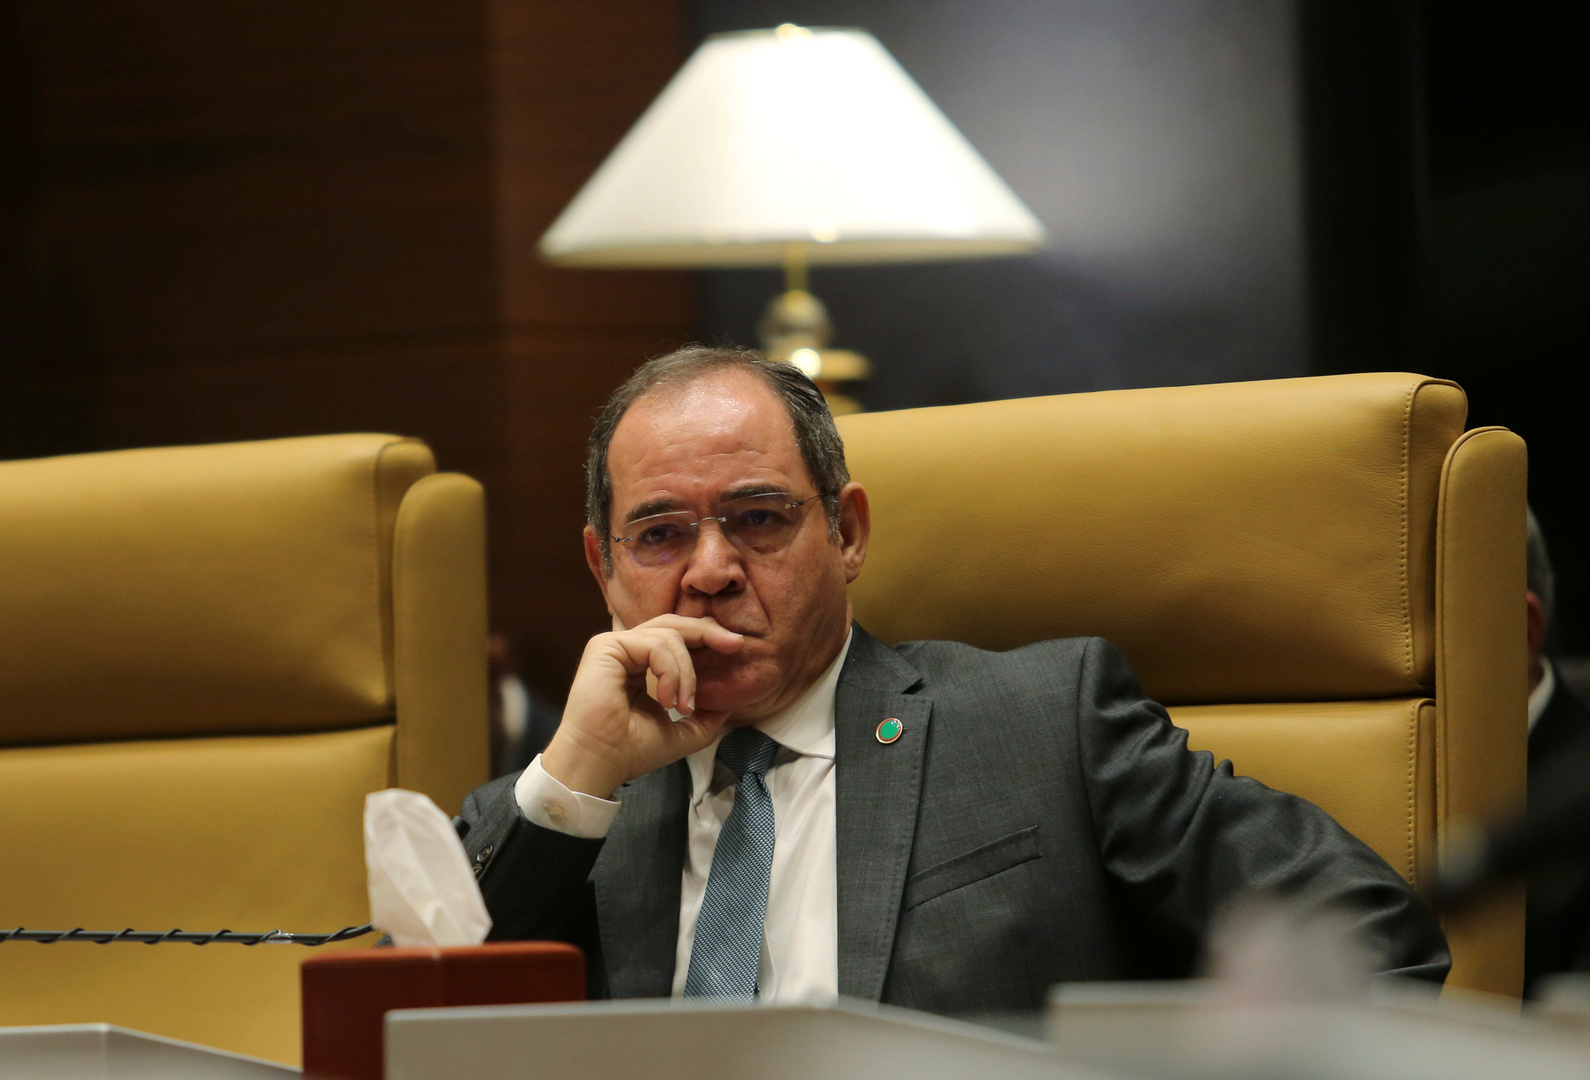 وزير الخارجية الجزائري يبحث في مالي كيفية الدفع بعملية السلم والمصالحة